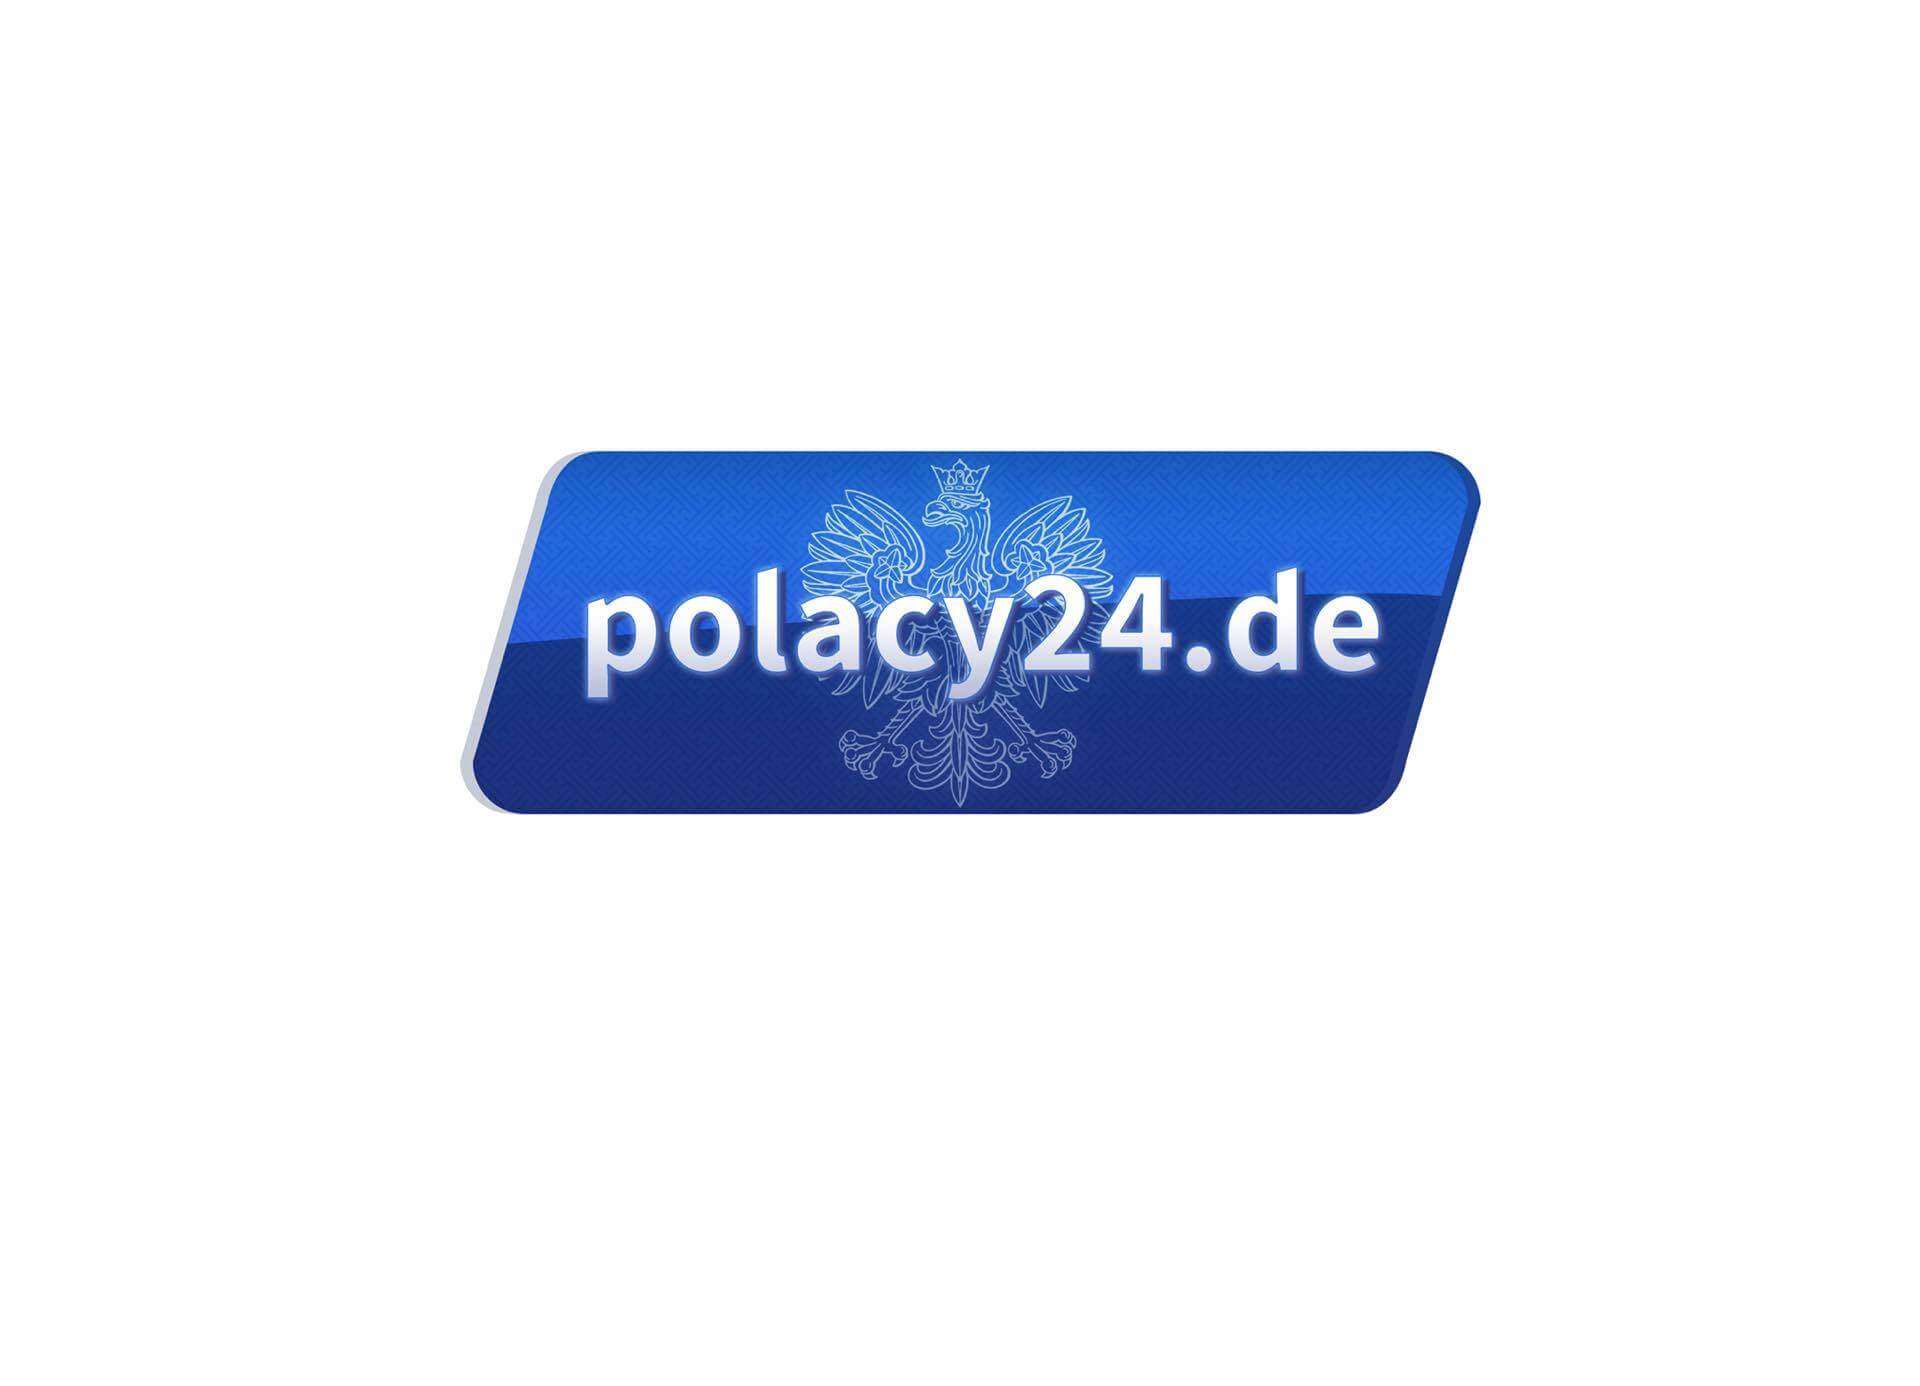 Polacy24.de